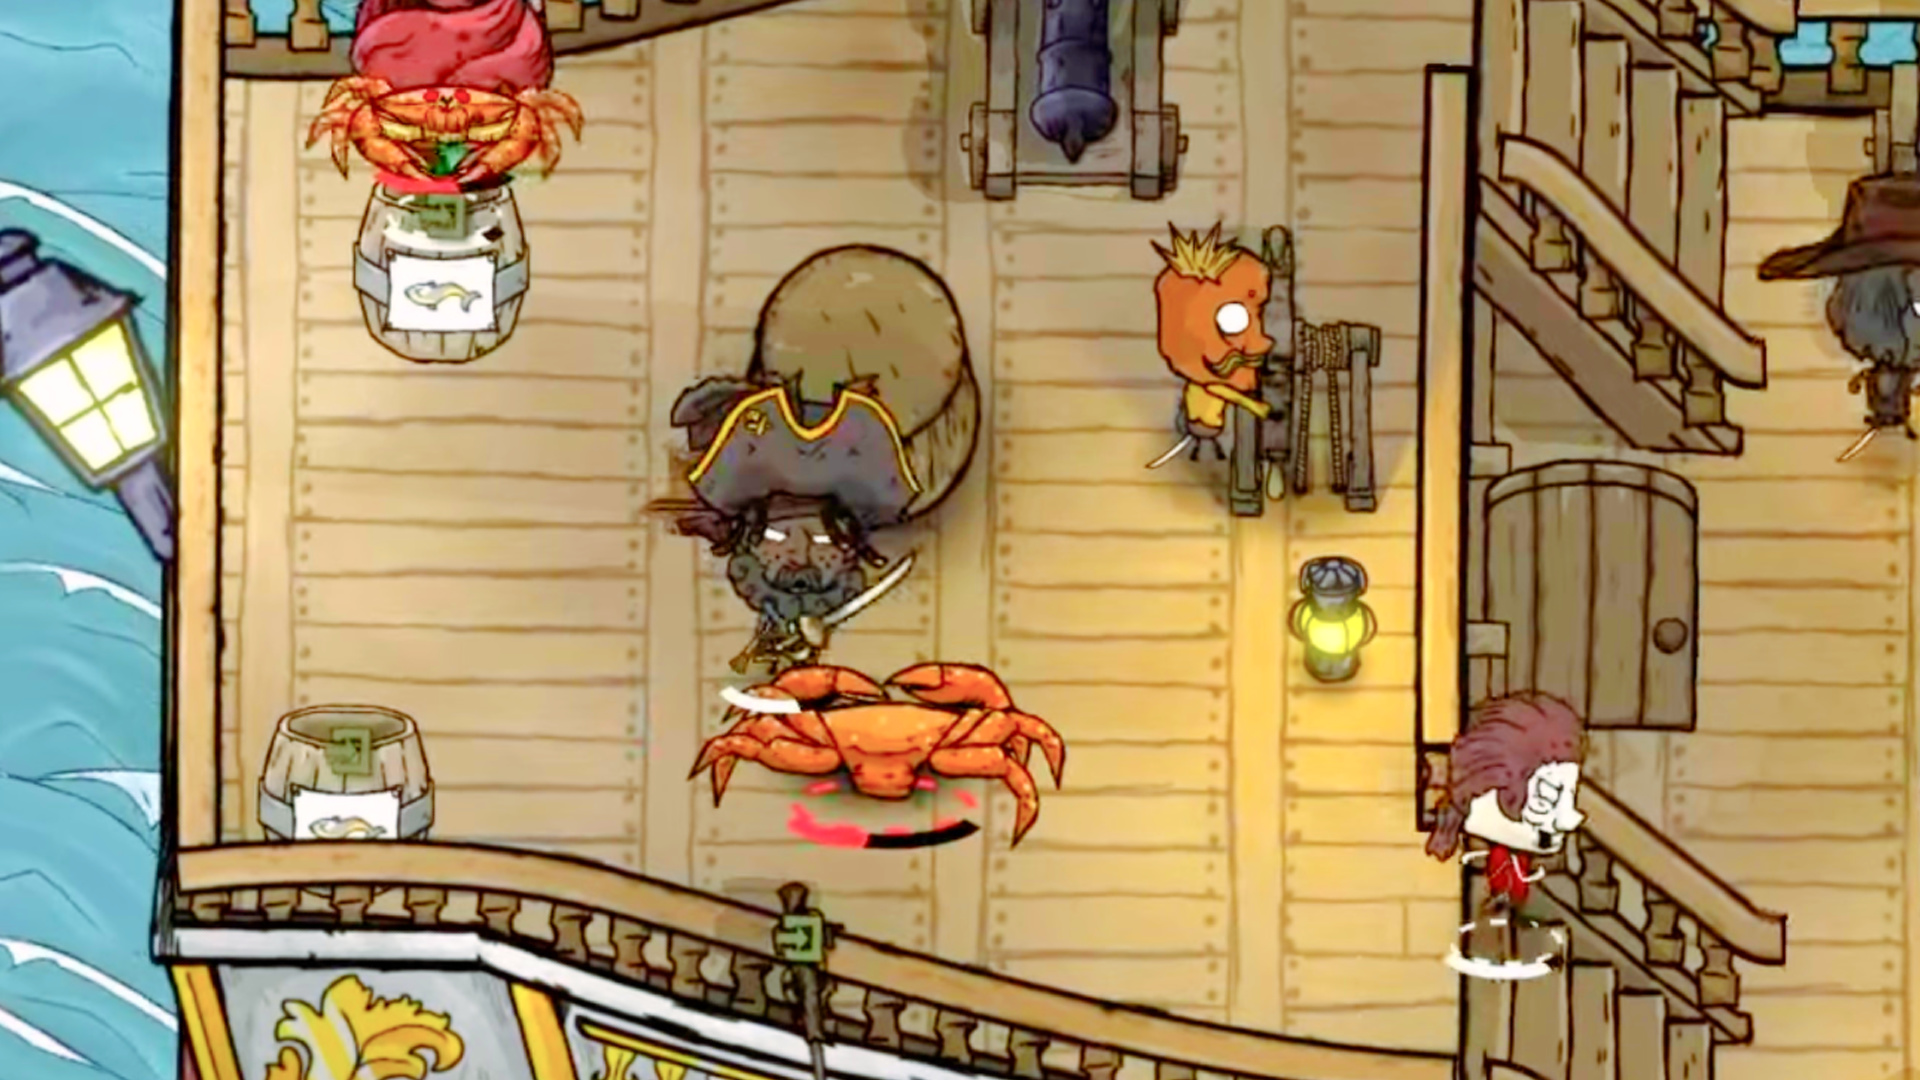 El juego pirata estilo Don't Starve de los modders RimWorld ya está disponible en Steam